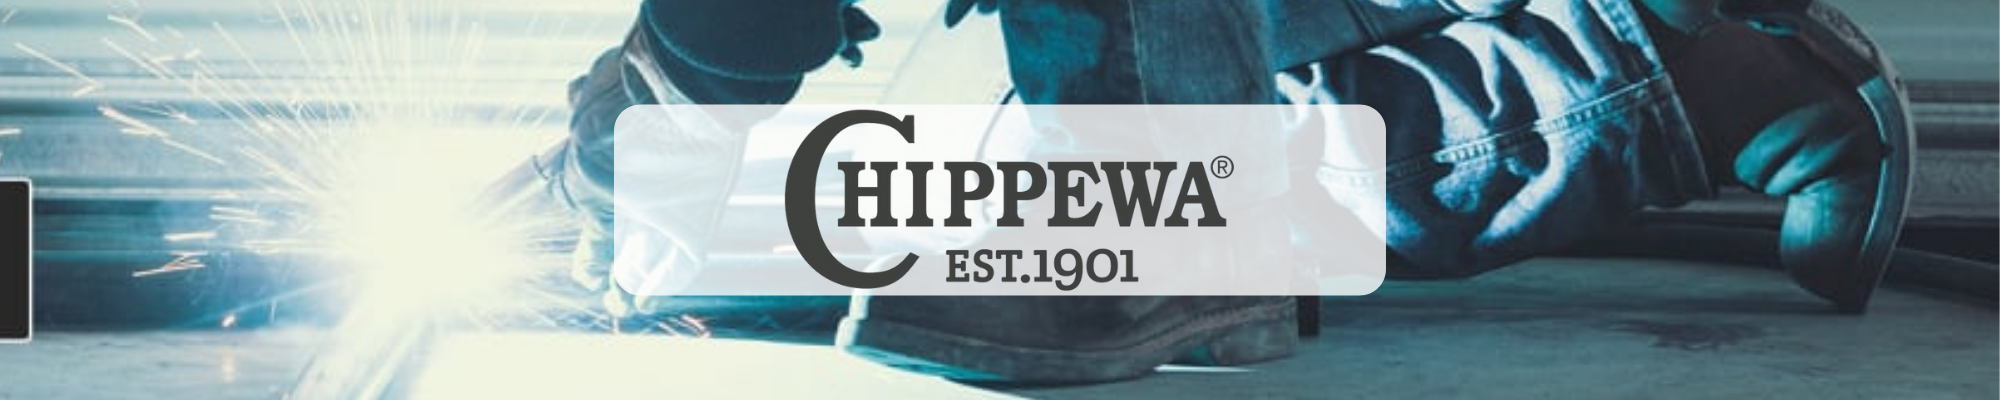 Chippewa Boots Logo